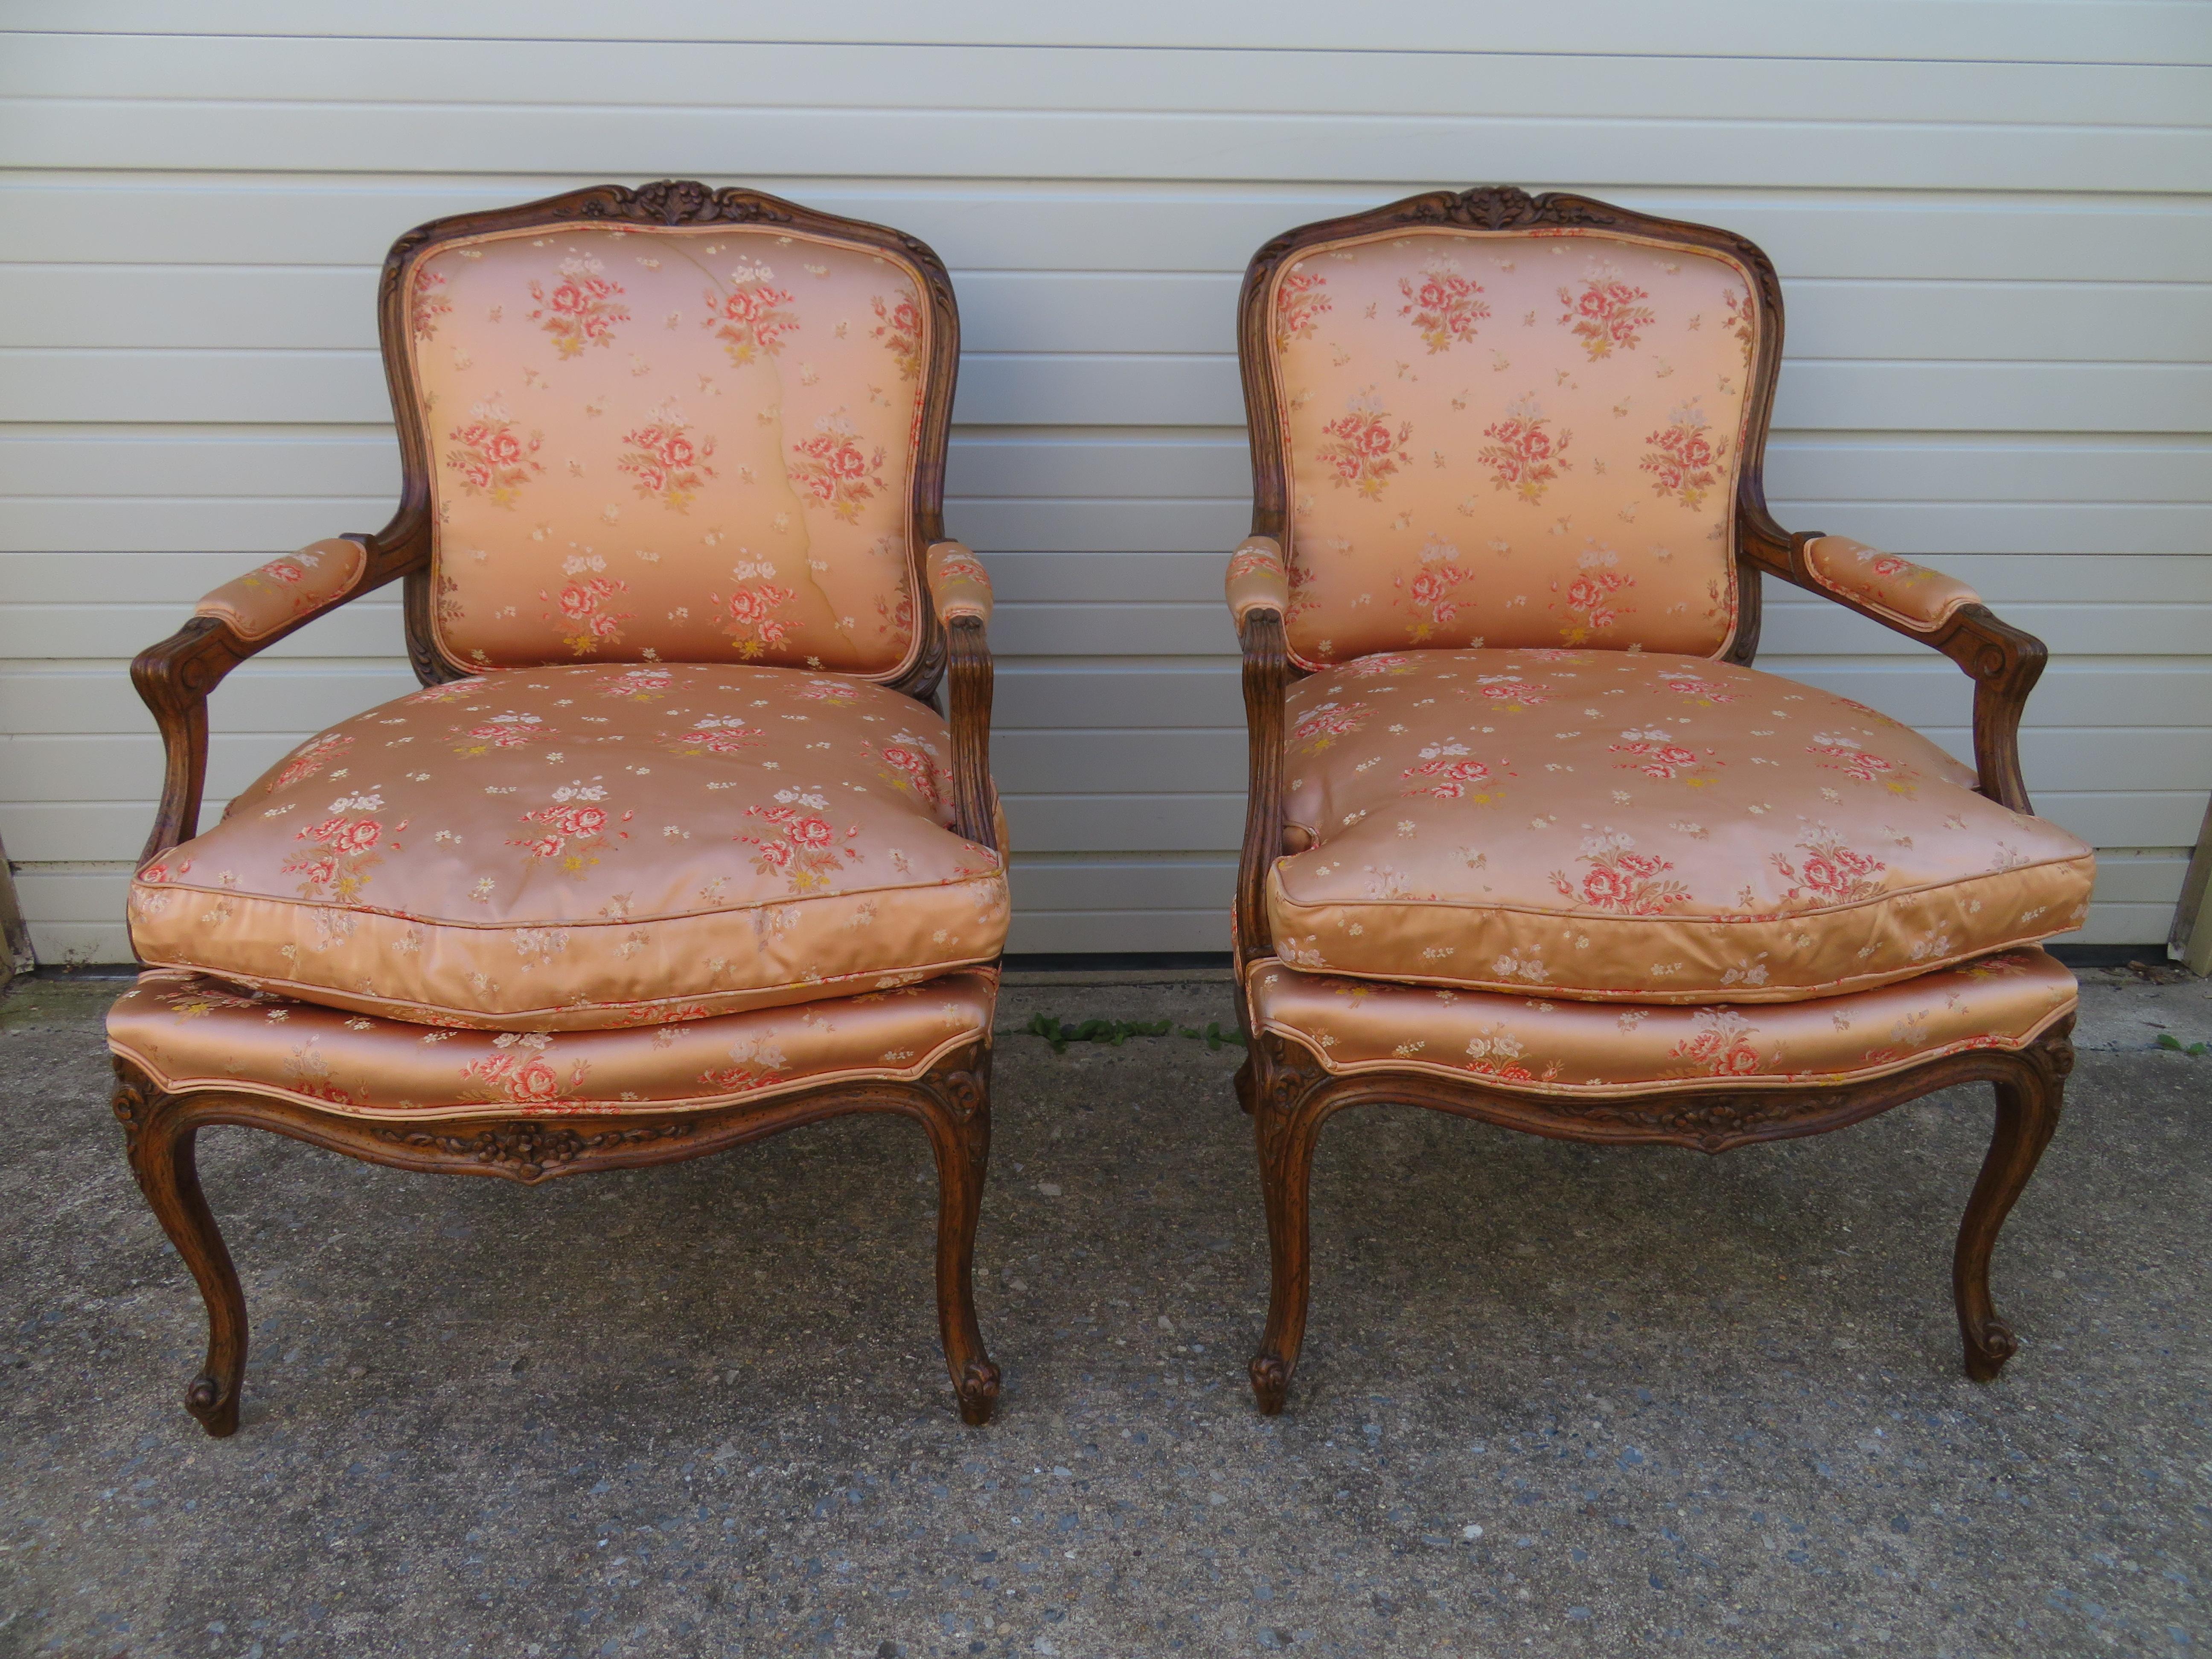 Schönes Paar französischer Louis-XV-Bergère-Stühle aus der Jahrhundertmitte. Die Polsterung scheint original zu sein und zeigt leichte Abnutzungserscheinungen mit einem Wasserfleck auf einer Rückseite. Die Sitzkissen sind mit Daunen gefüllt und sehr